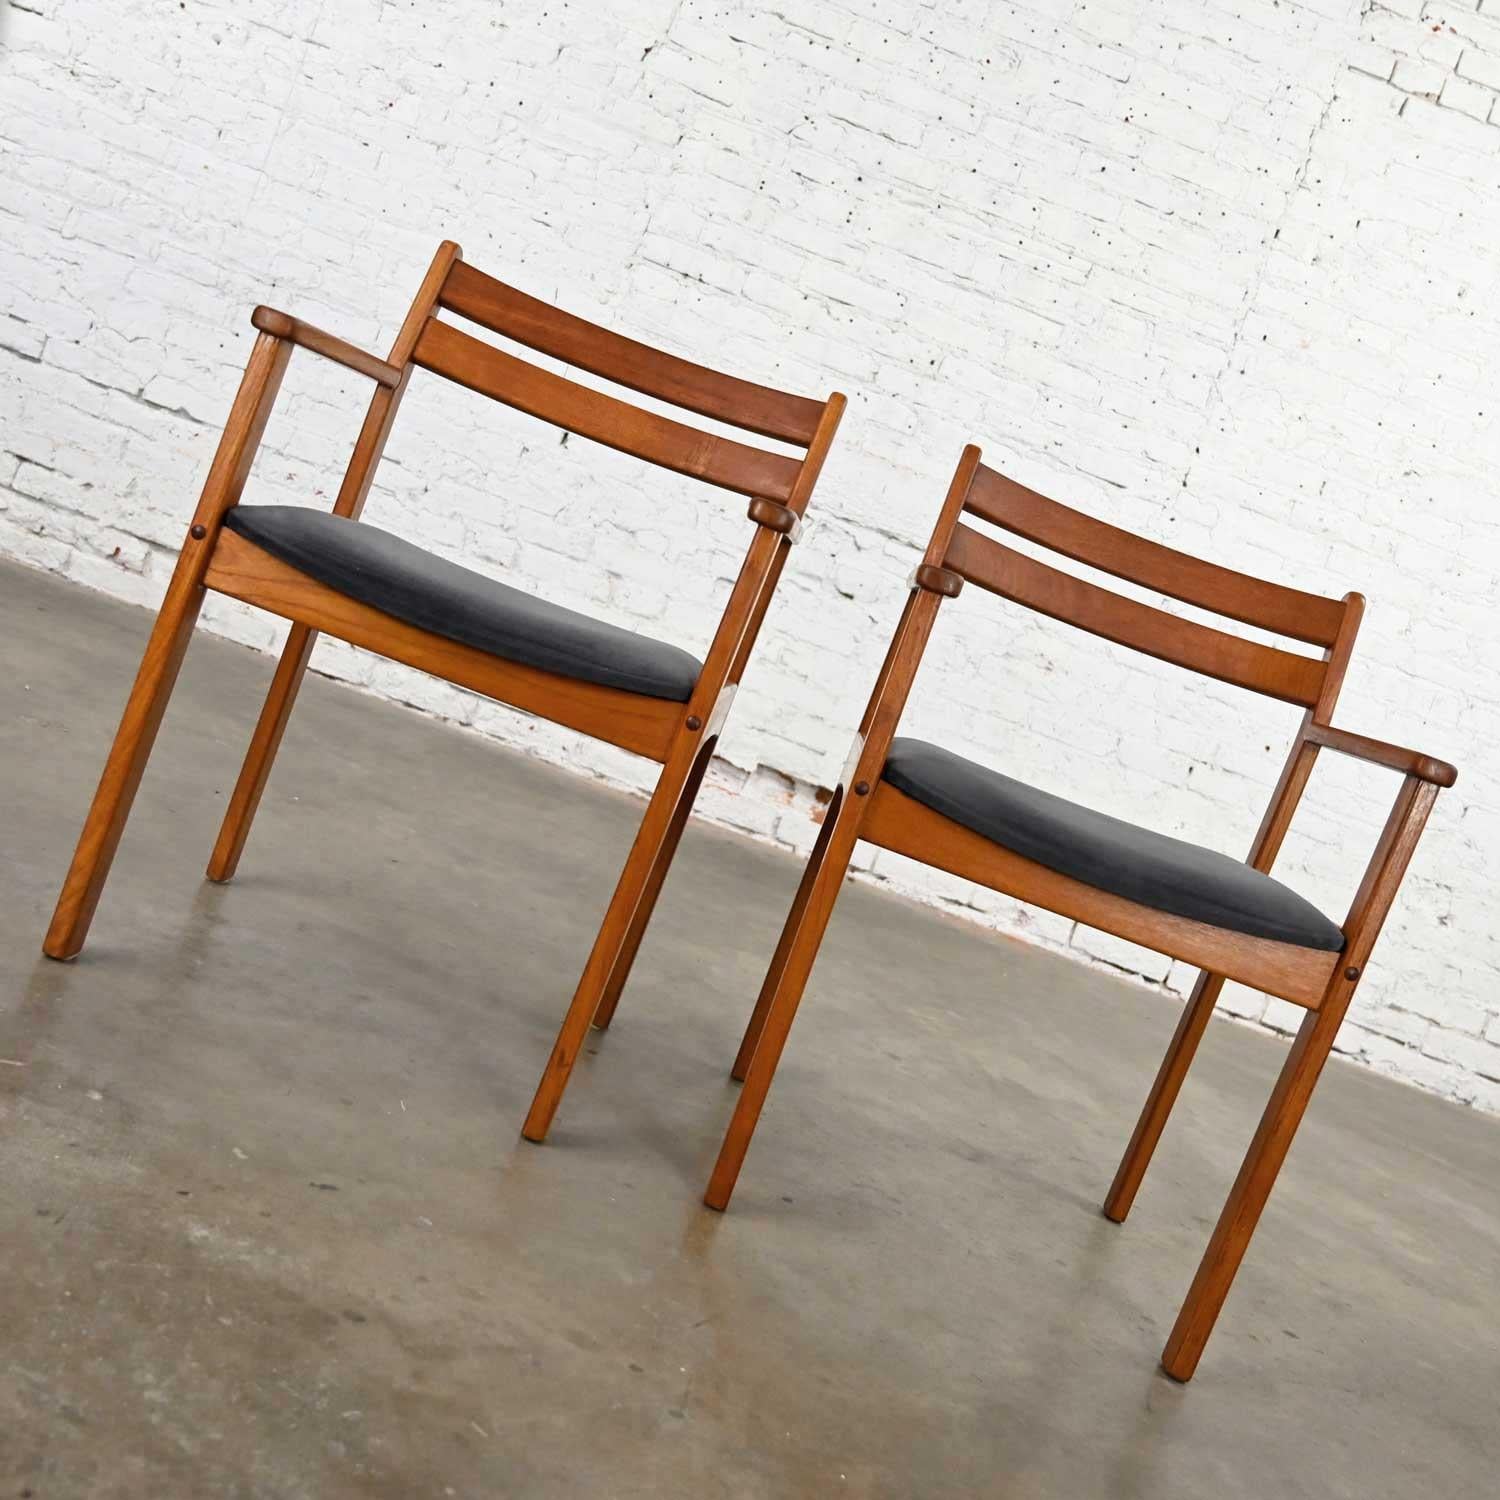 Superbe paire de fauteuils en teck de style scandinave moderne avec leurs coussins d'origine en tissu anthracite brossé. Il est indiqué qu'elles sont fabriquées au Danemark, mais nous n'avons pas été en mesure d'identifier le fabricant. Belle